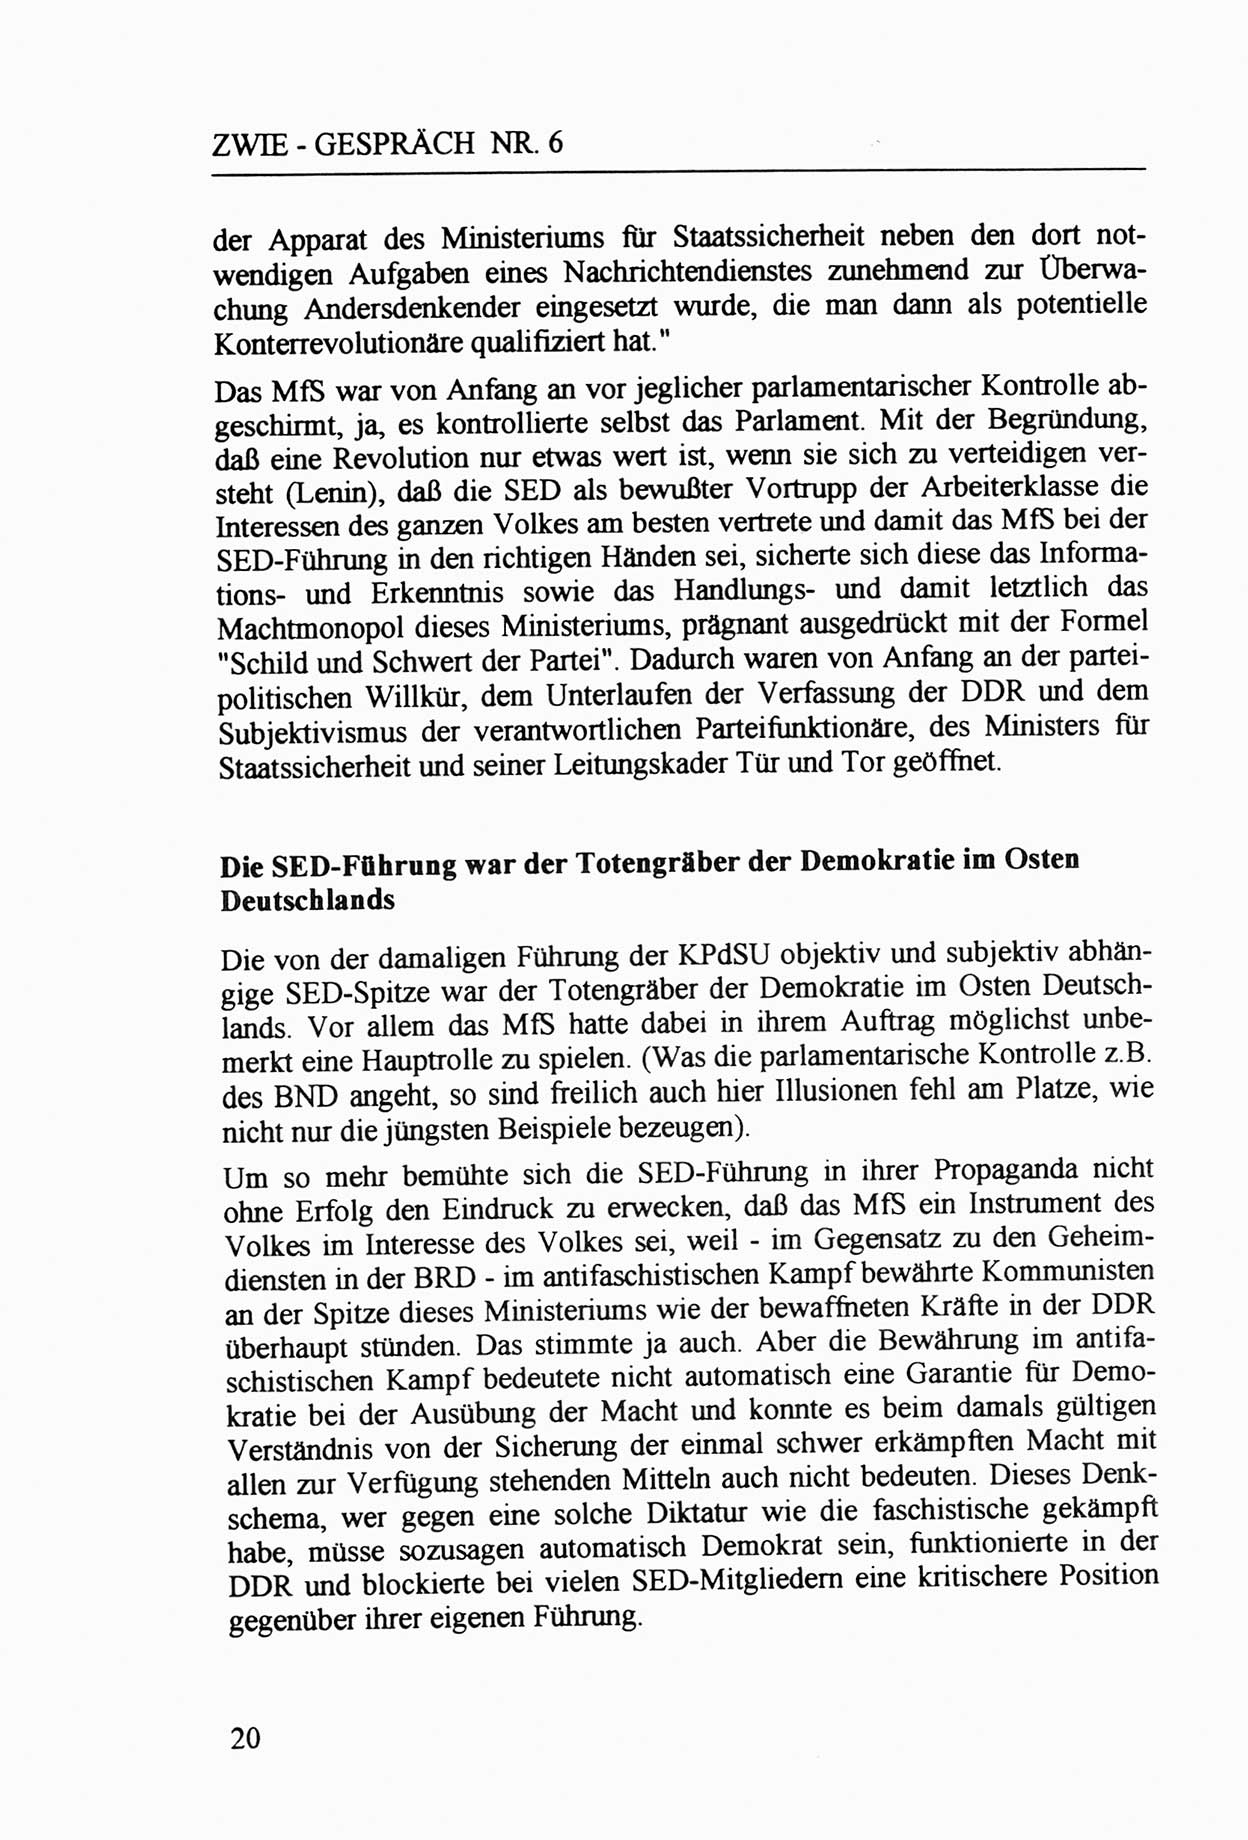 Zwie-Gespräch, Beiträge zur Aufarbeitung der Staatssicherheits-Vergangenheit [Deutsche Demokratische Republik (DDR)], Ausgabe Nr. 6, Berlin 1992, Seite 20 (Zwie-Gespr. Ausg. 6 1992, S. 20)